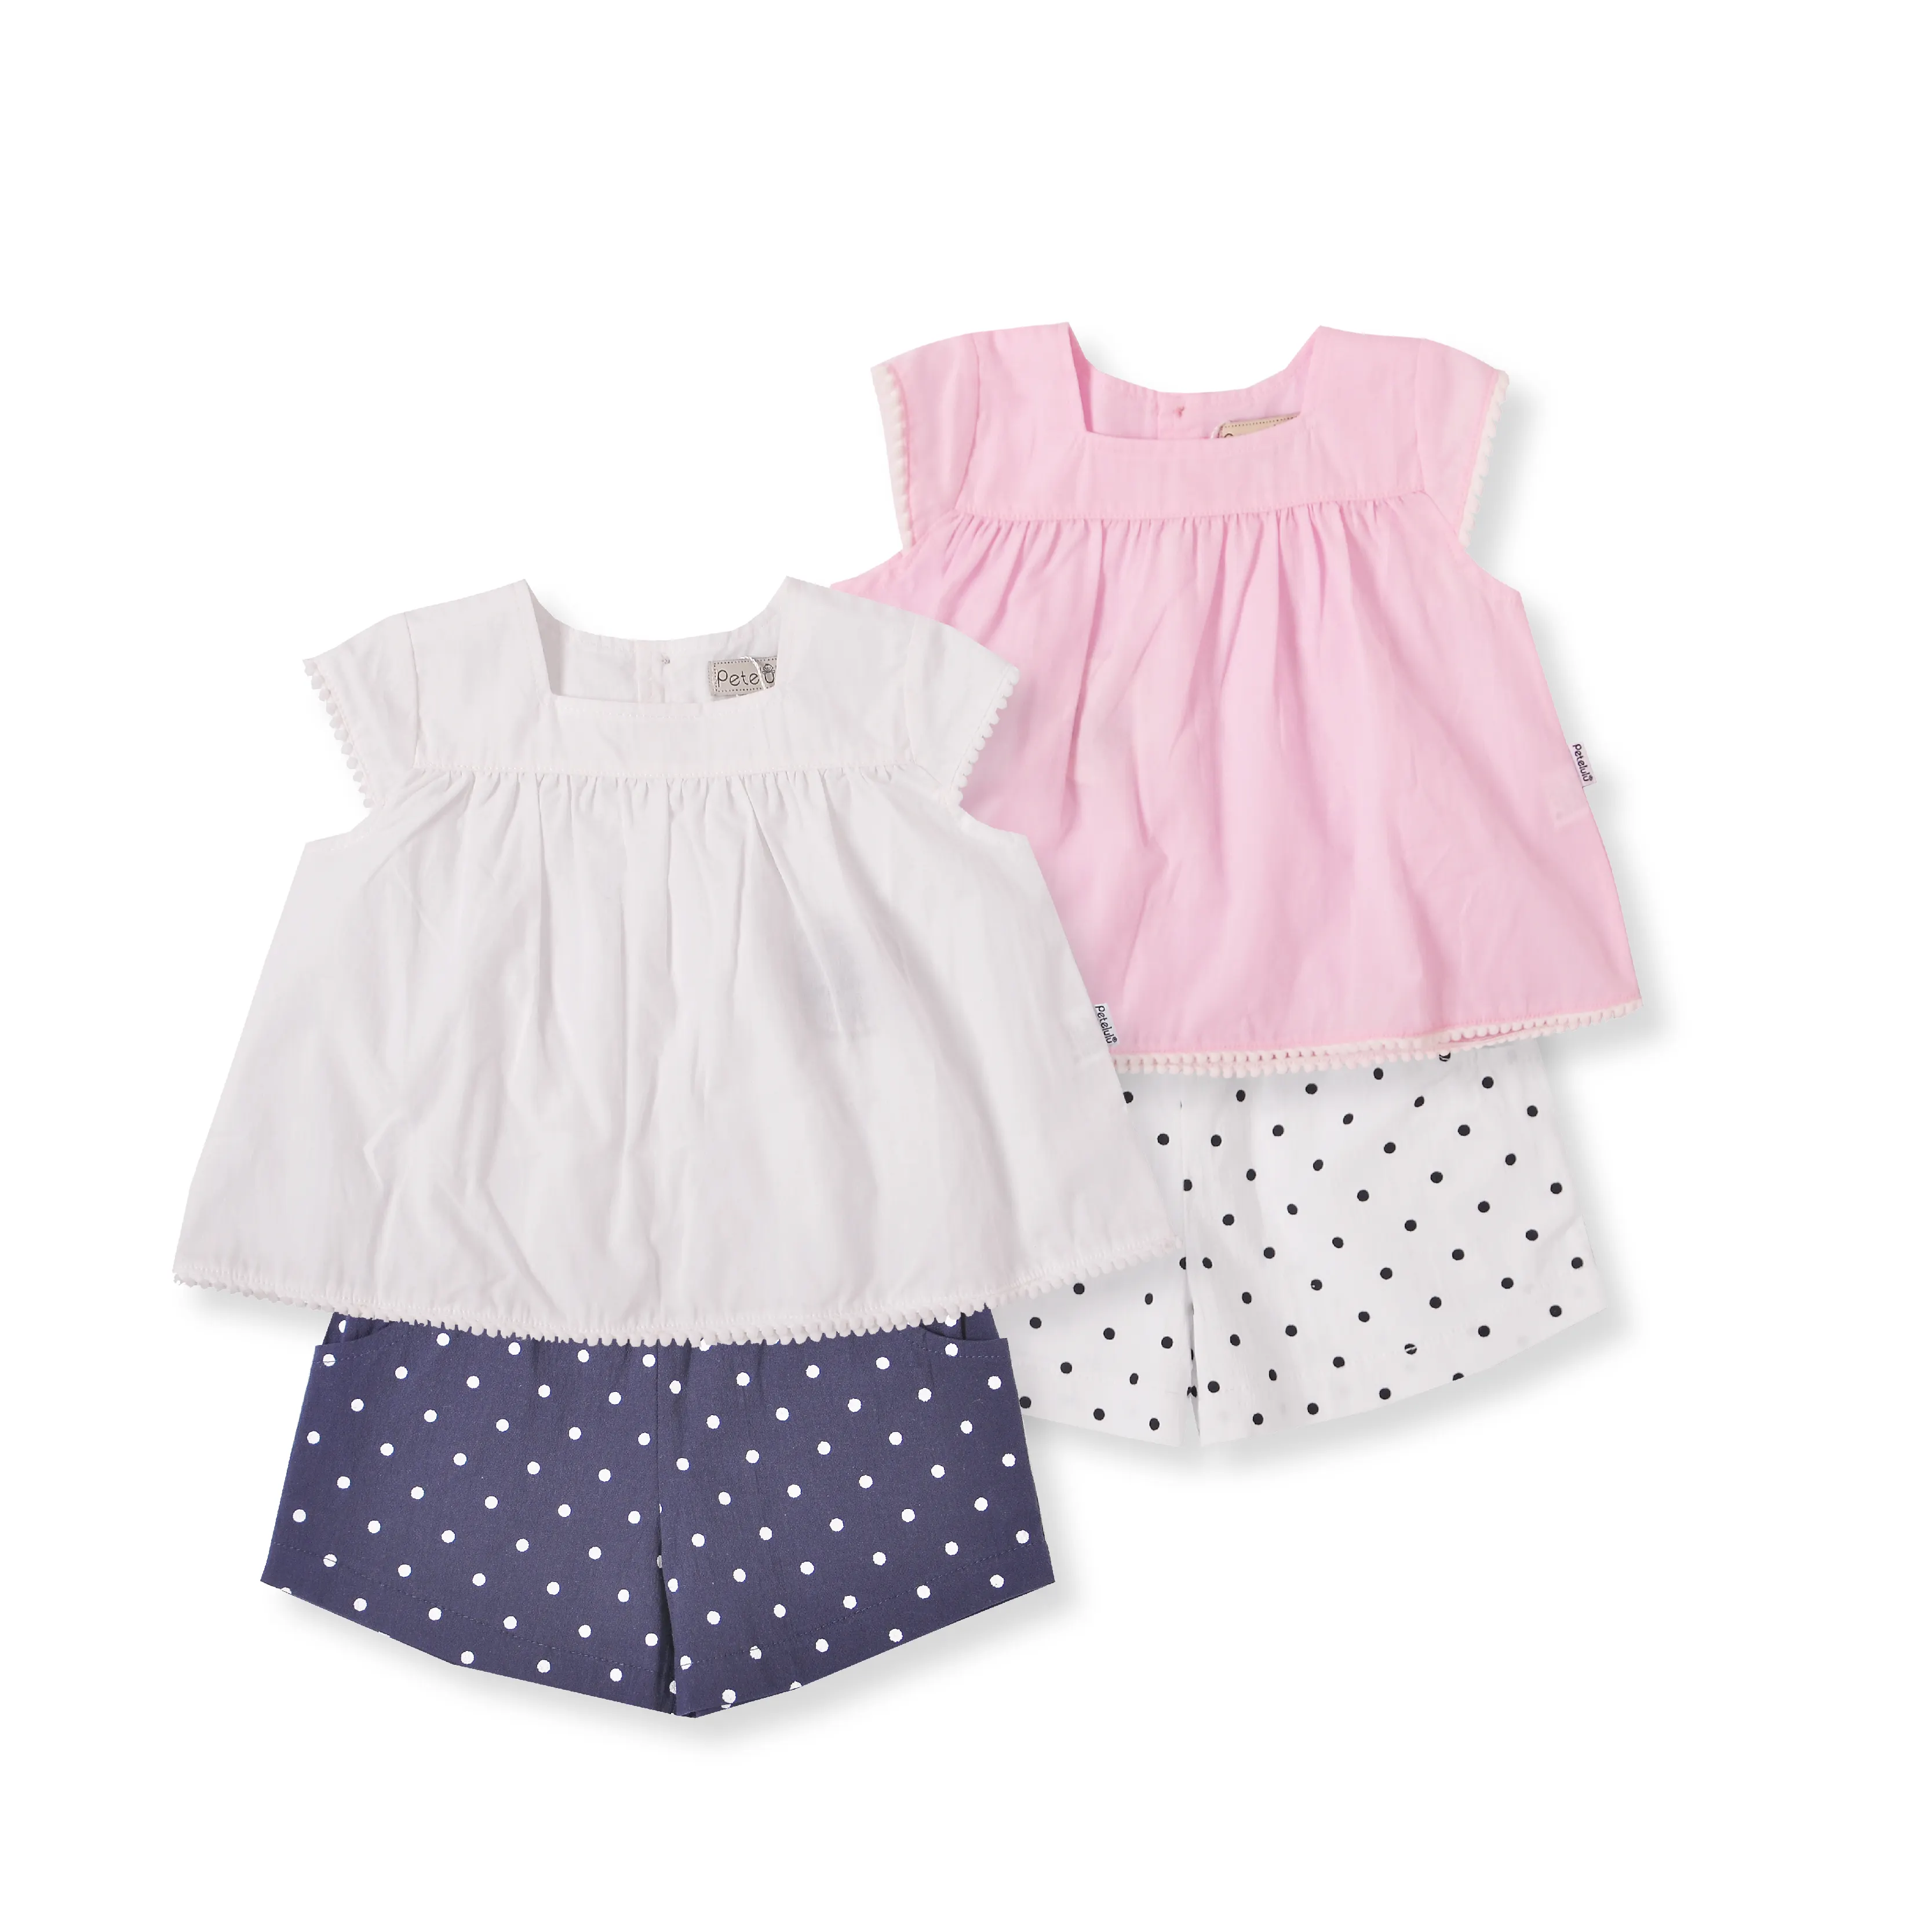 Vestiti casuali all'ingrosso della ragazza del modello di modo del panno dei bambini del fiore solido messi per la parte superiore irregolare senza maniche dei bambini rosa bianco 360